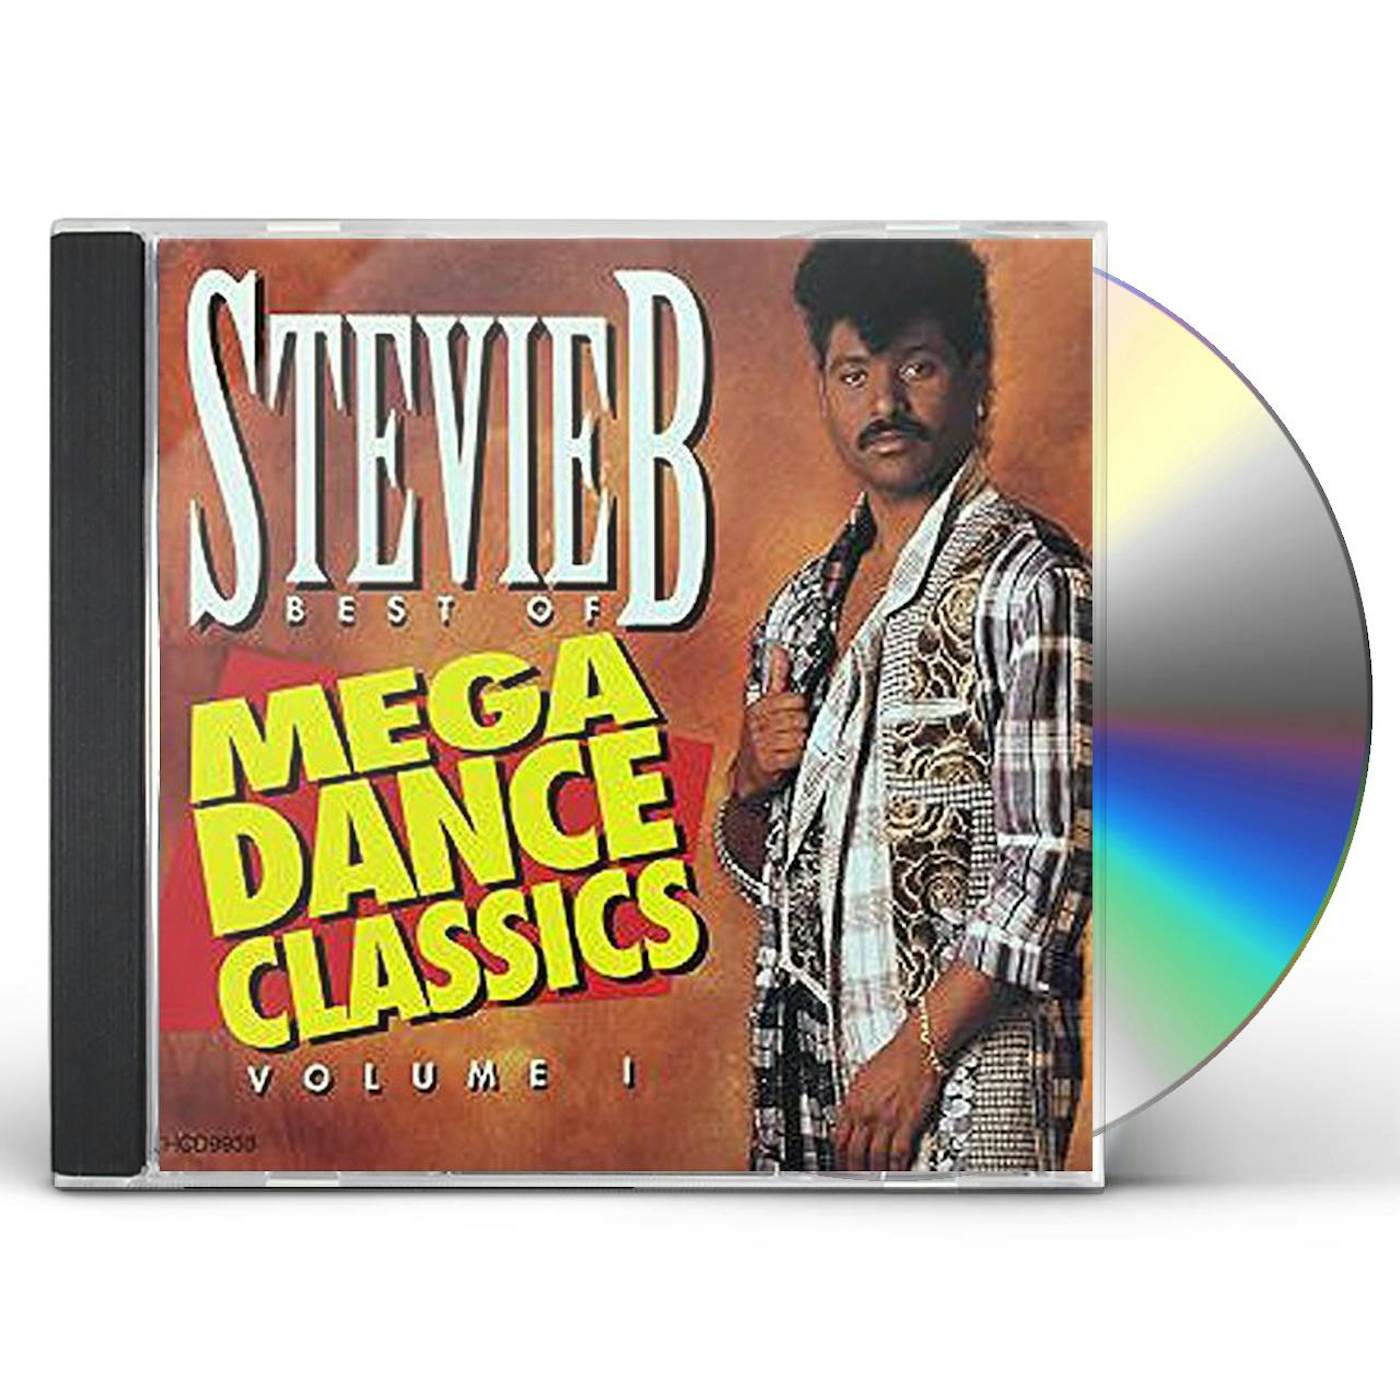 Stevie B BEST OF MEGA DANCE CLASSICS VOLUME 1 CD